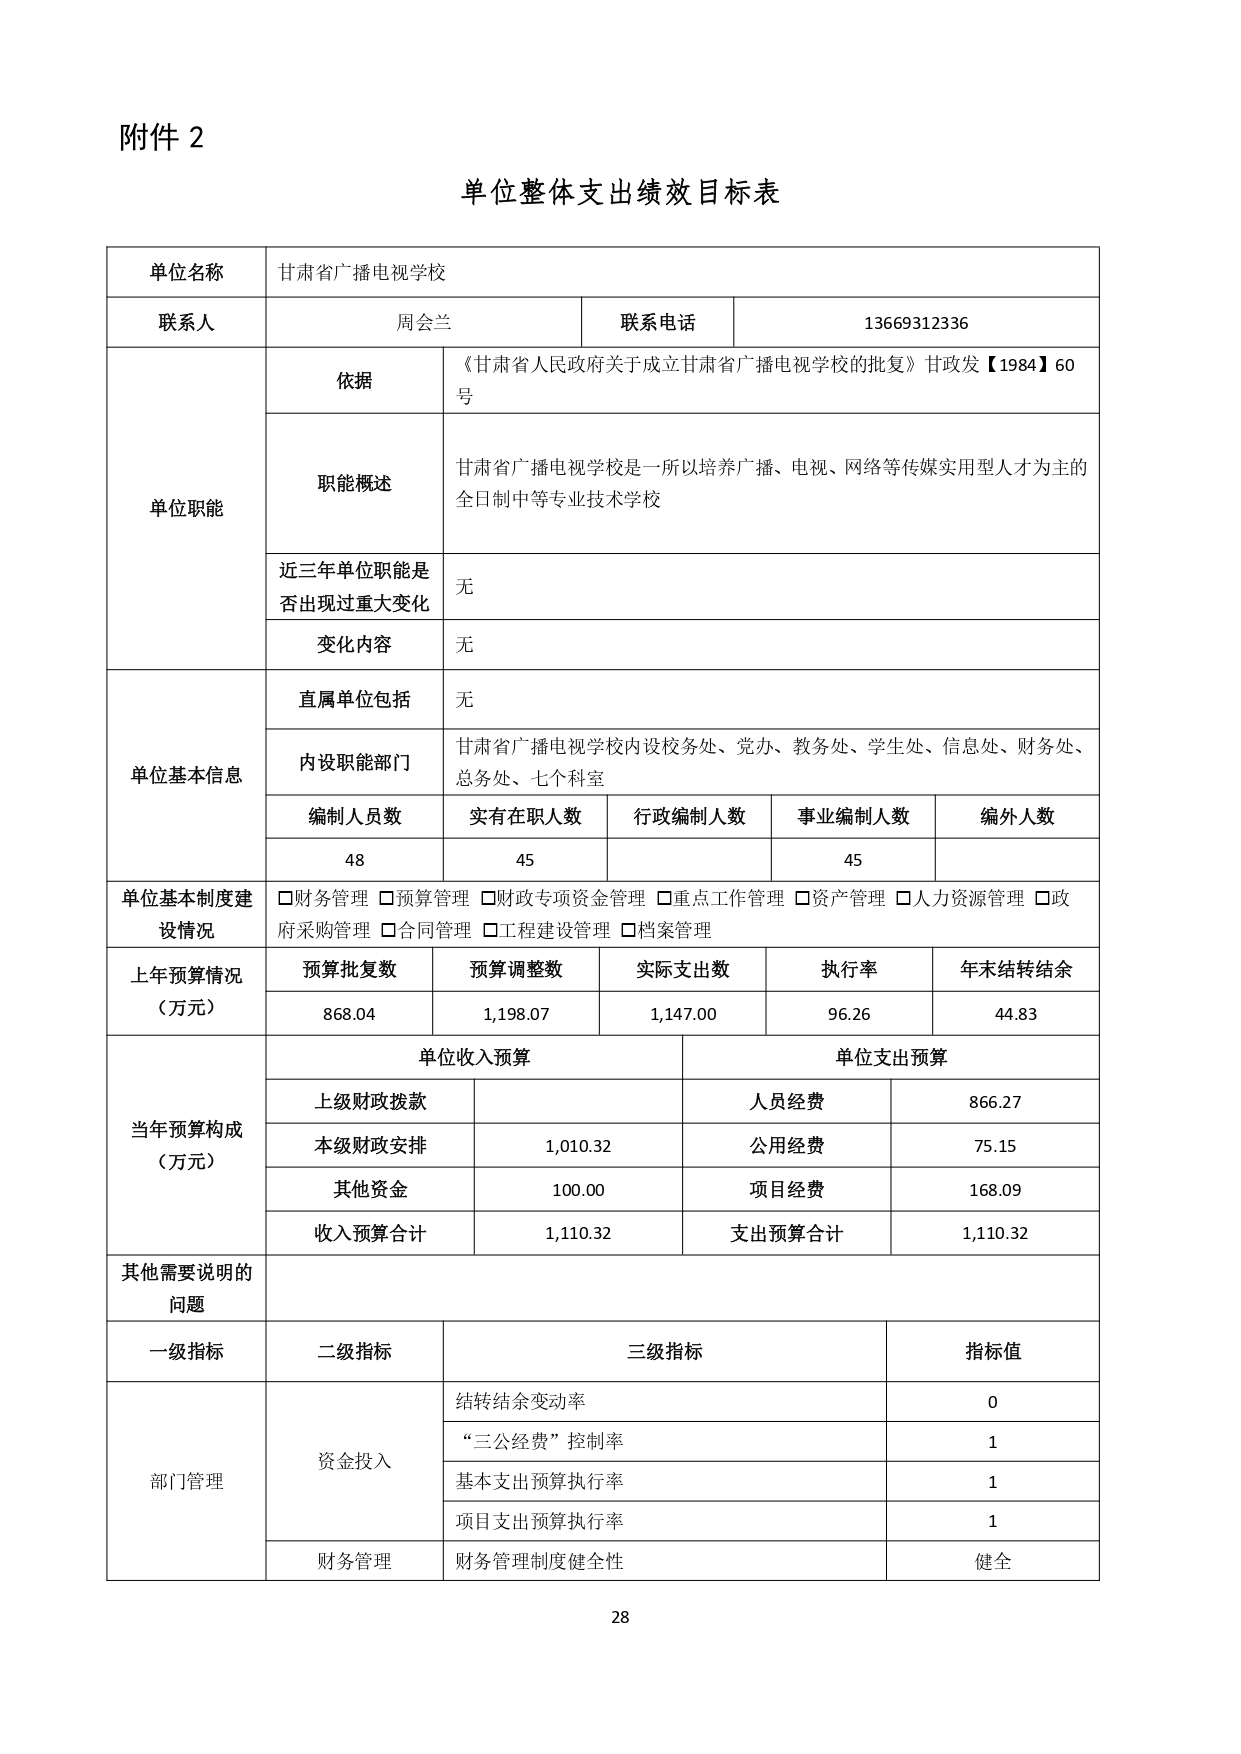 甘肃省广播电视学校2023年单位预算公开报告_page-0029.jpg